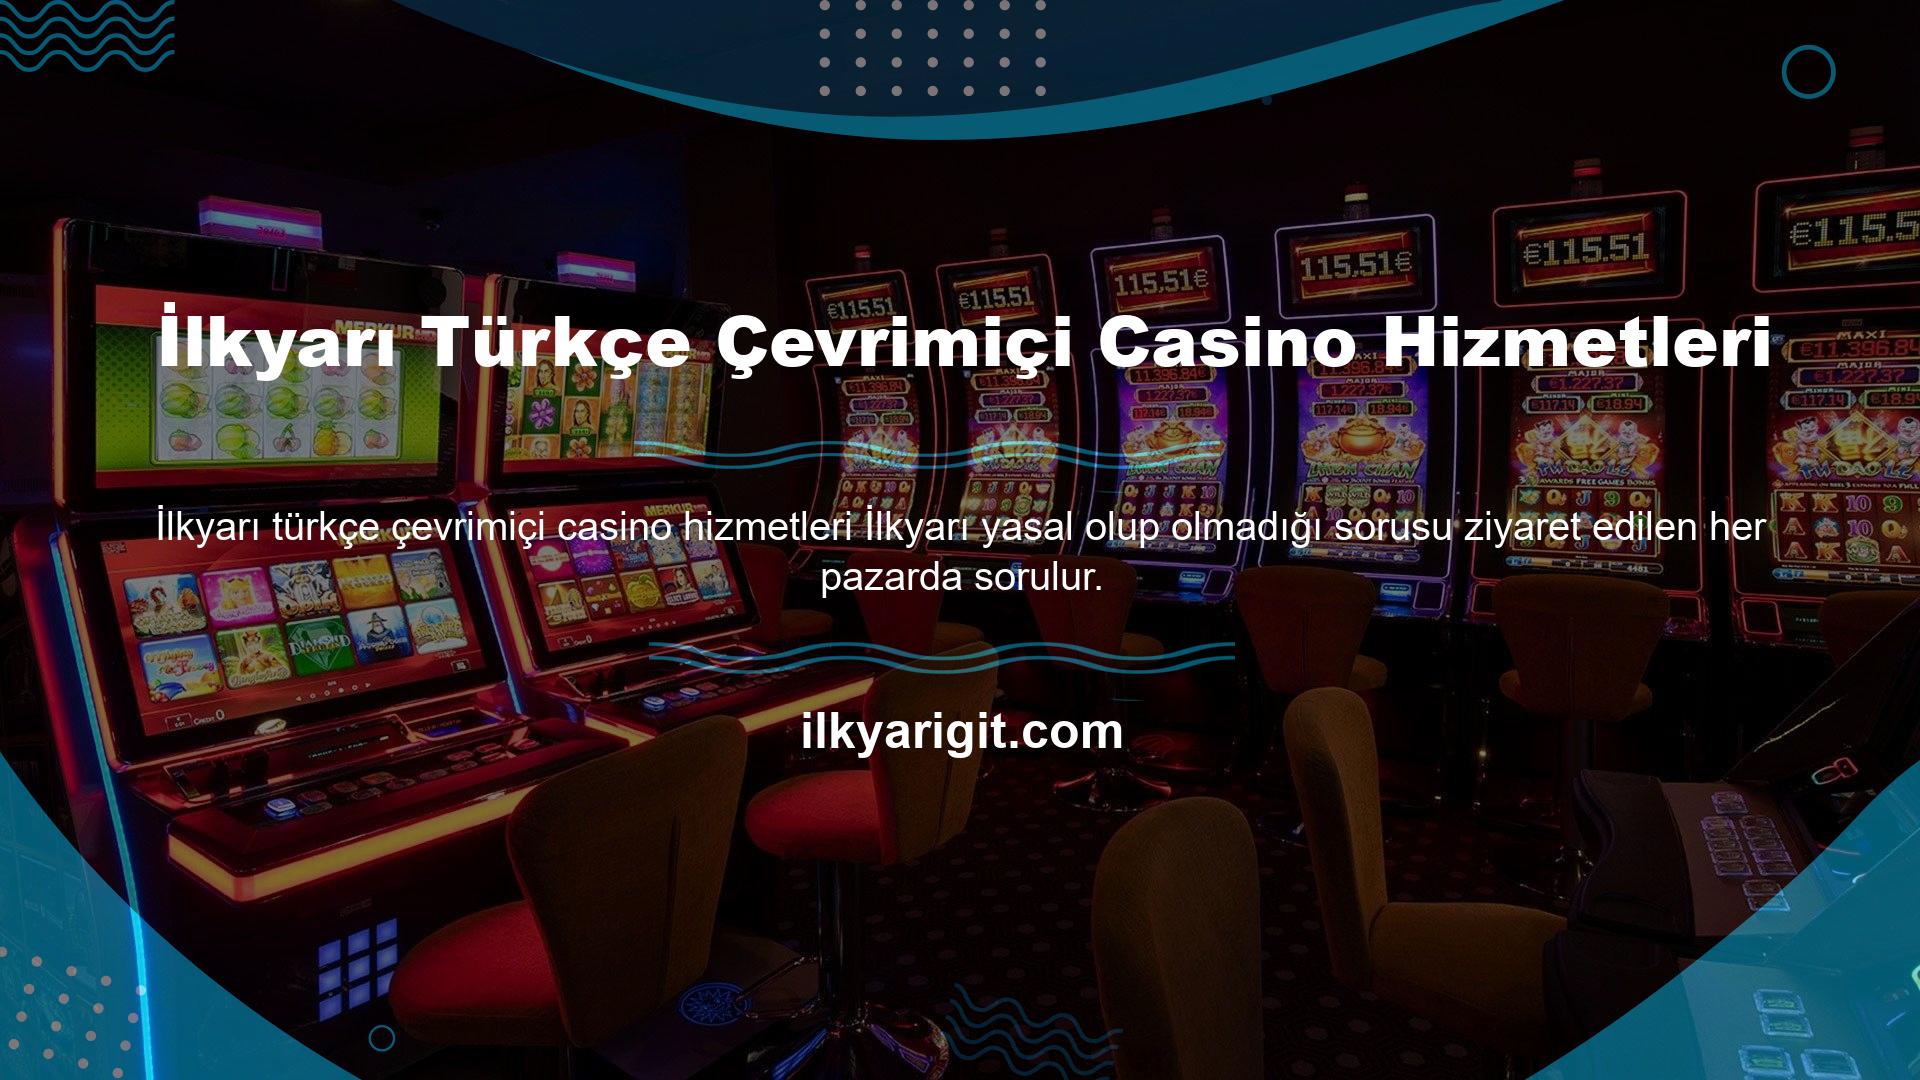 Türkçe hizmeti, Türkiye'deki tüm kullanıcılar için oyun oynamanıza izin verir